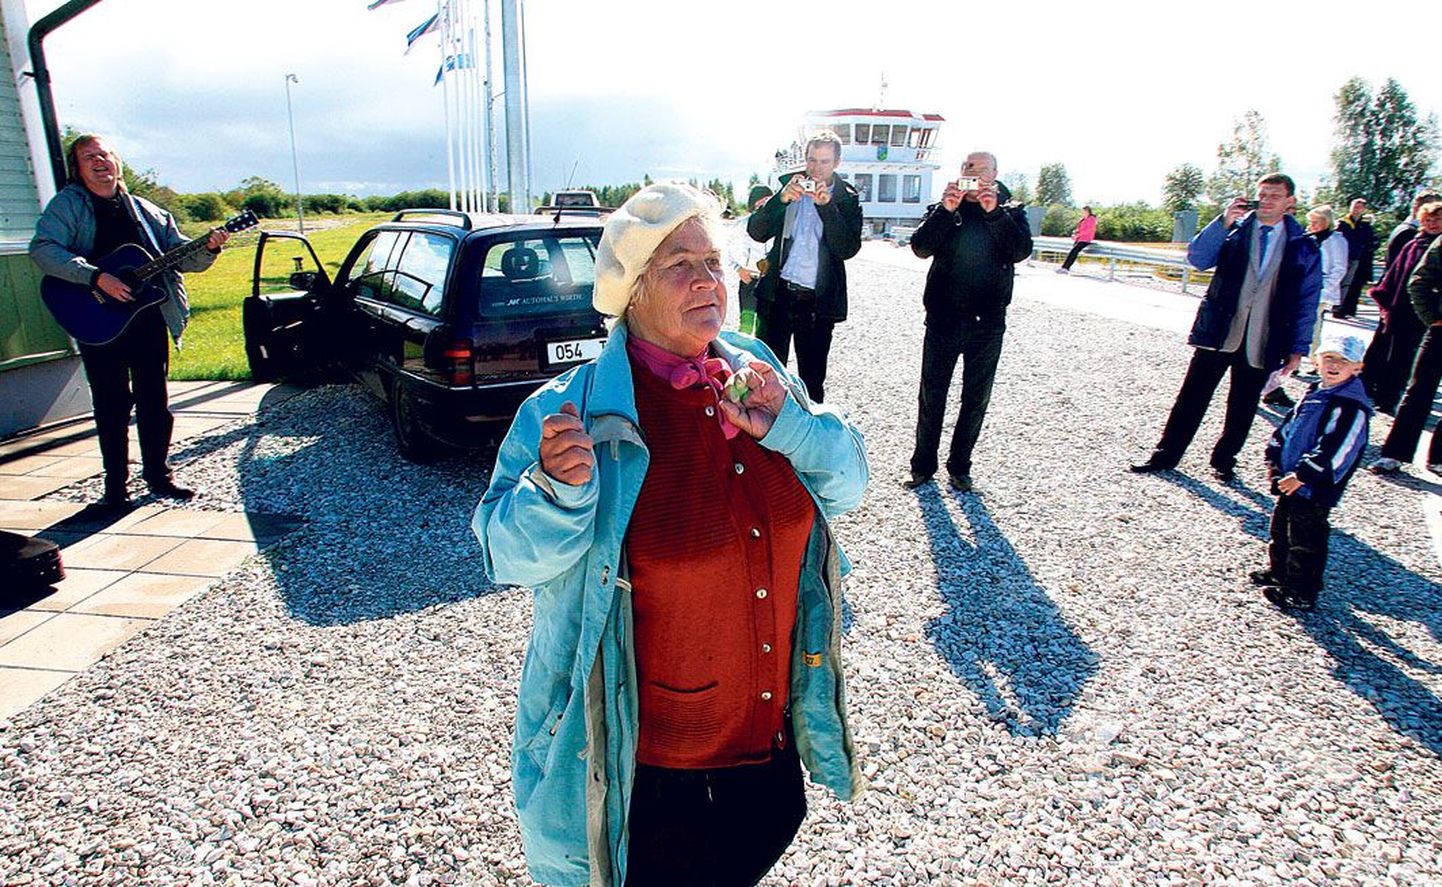 Жительница острова Прасковья Тейман на церемонии открытия порта Пийрисааре от радости пустилась в пляс.